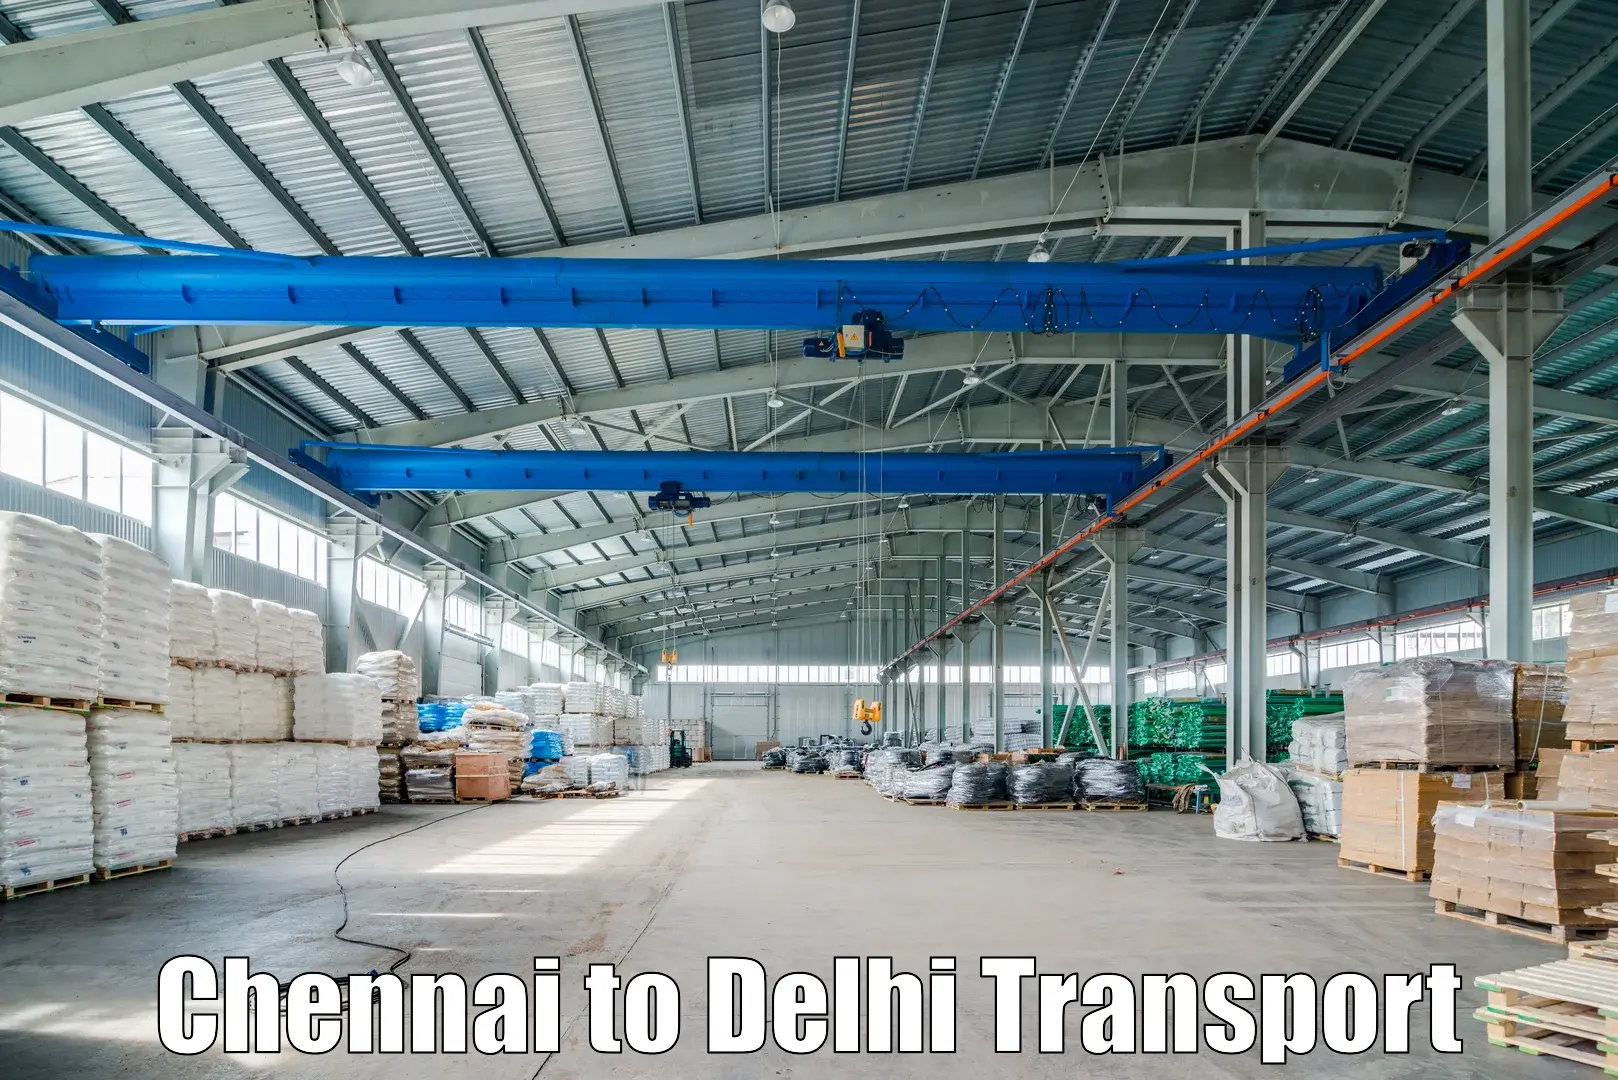 Daily transport service Chennai to University of Delhi